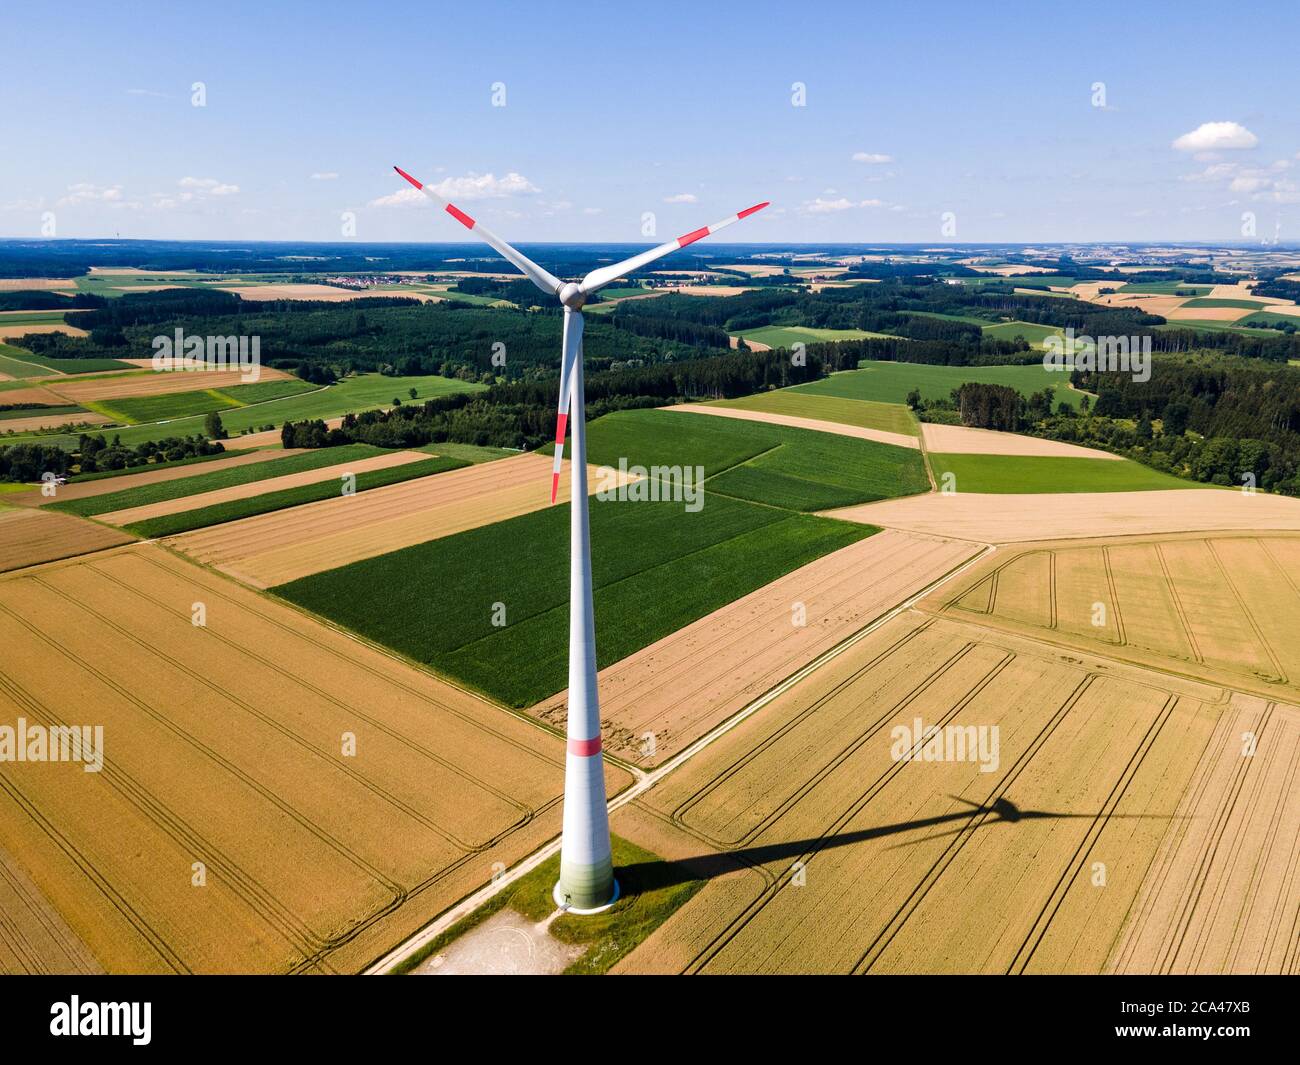 Single Enercon Windmill in a Bavarian field  Stock Photo